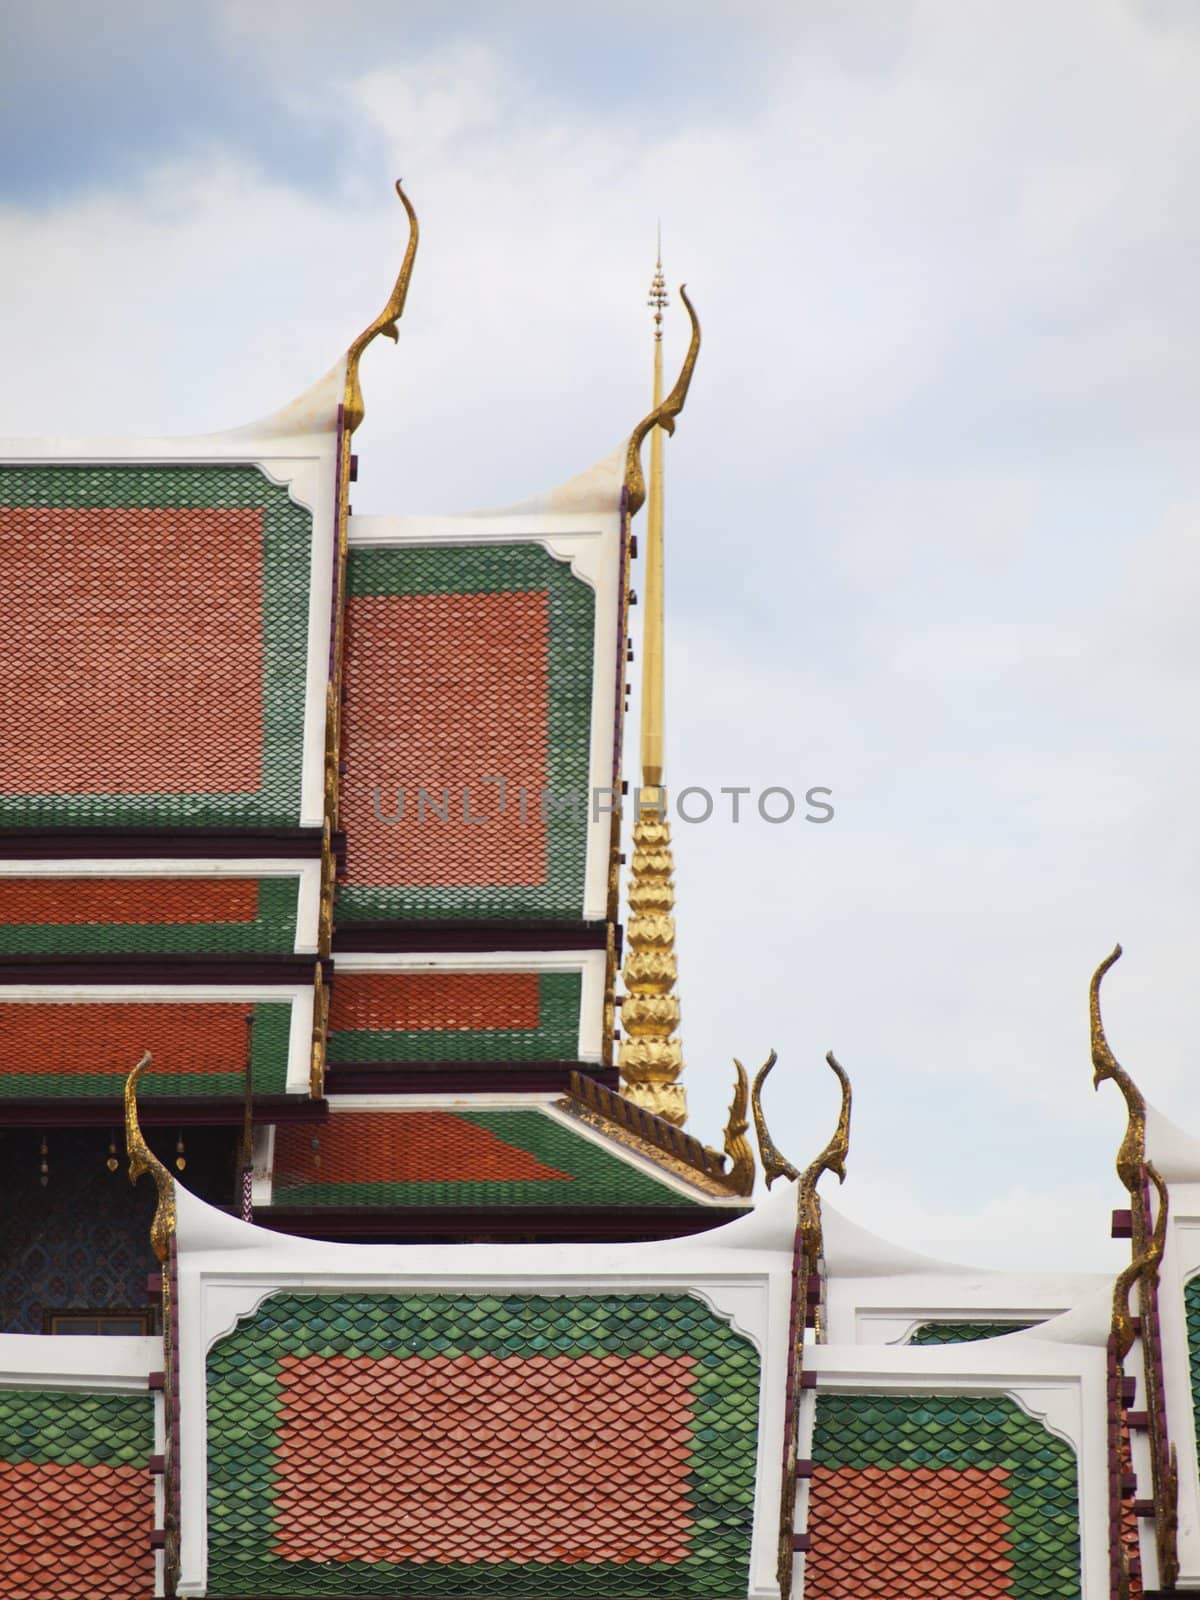 Roof closeup  of Grand Palace in Bangkok Thailand